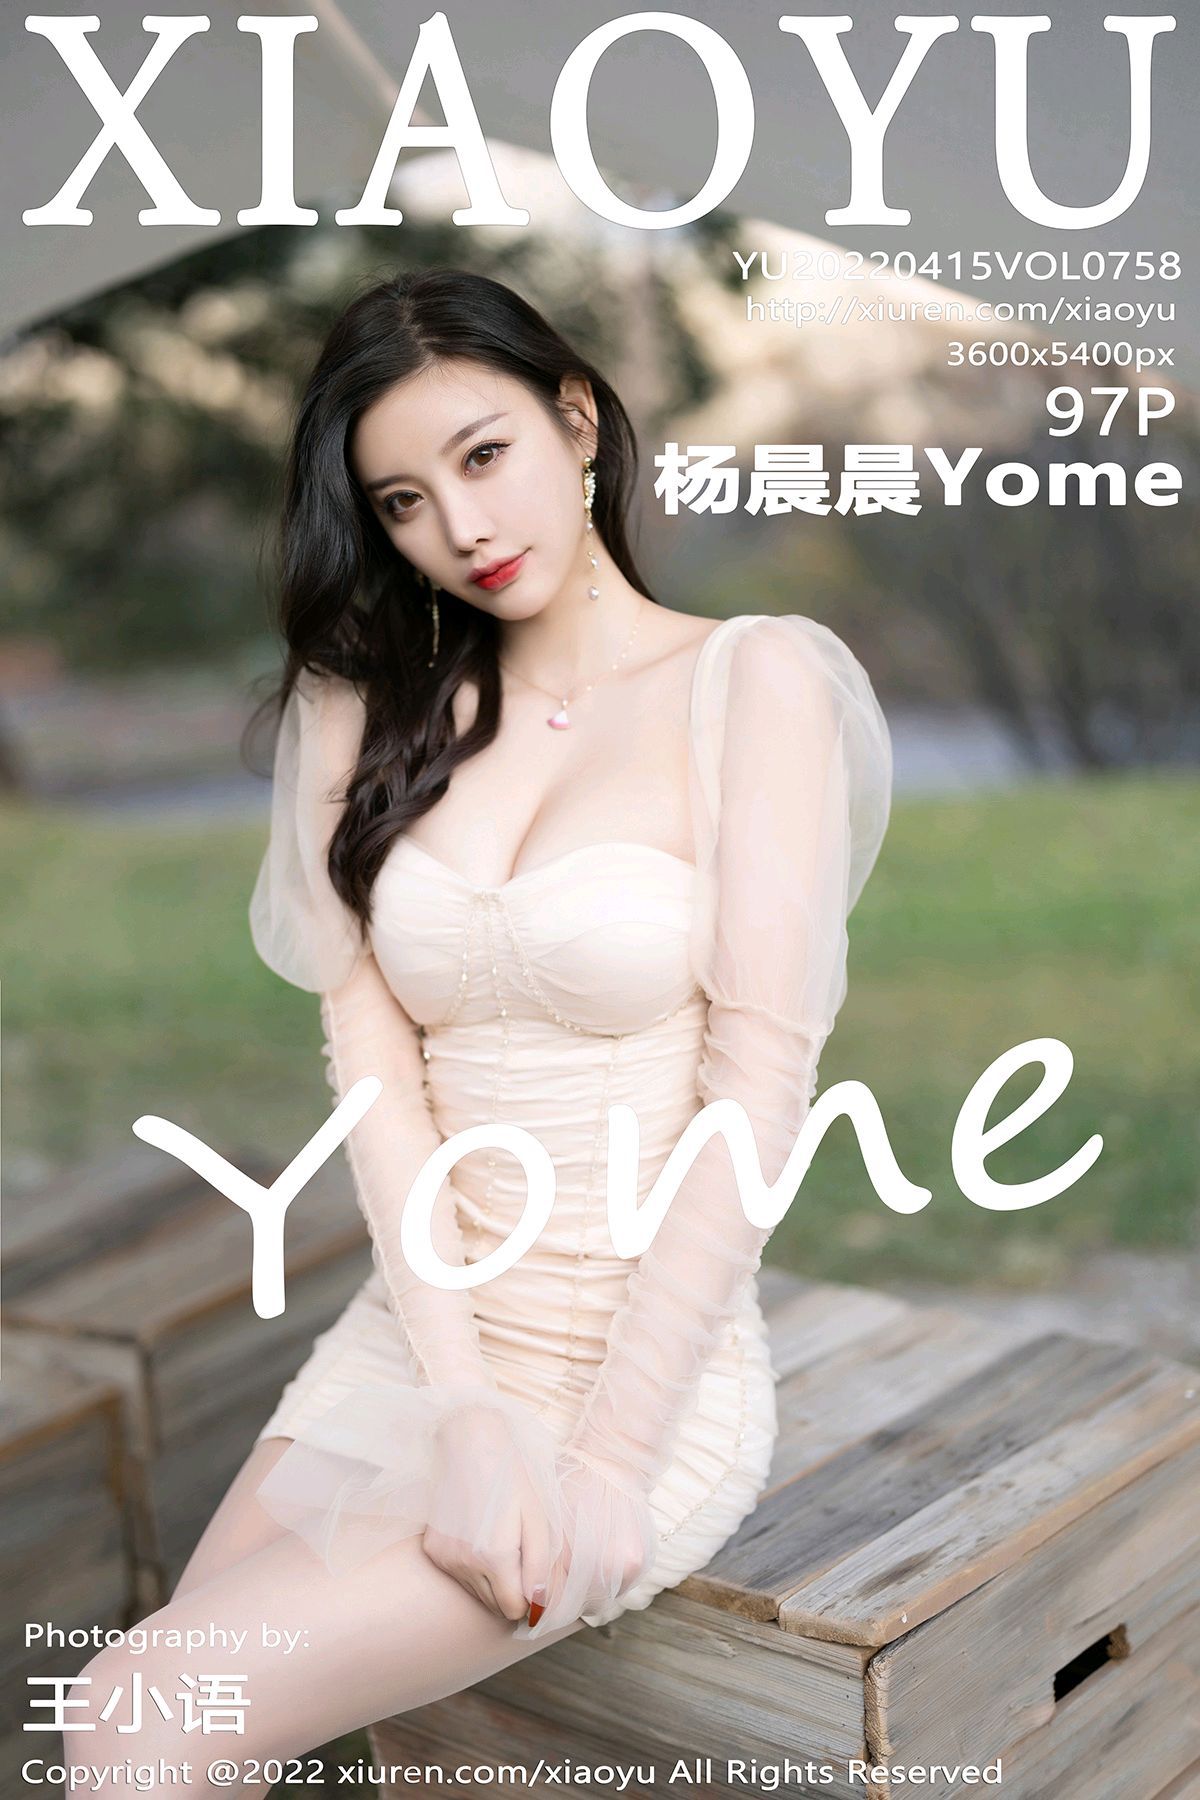 XIAOYU语画界性感模特写真第Vol.758期杨晨晨Yome (99)